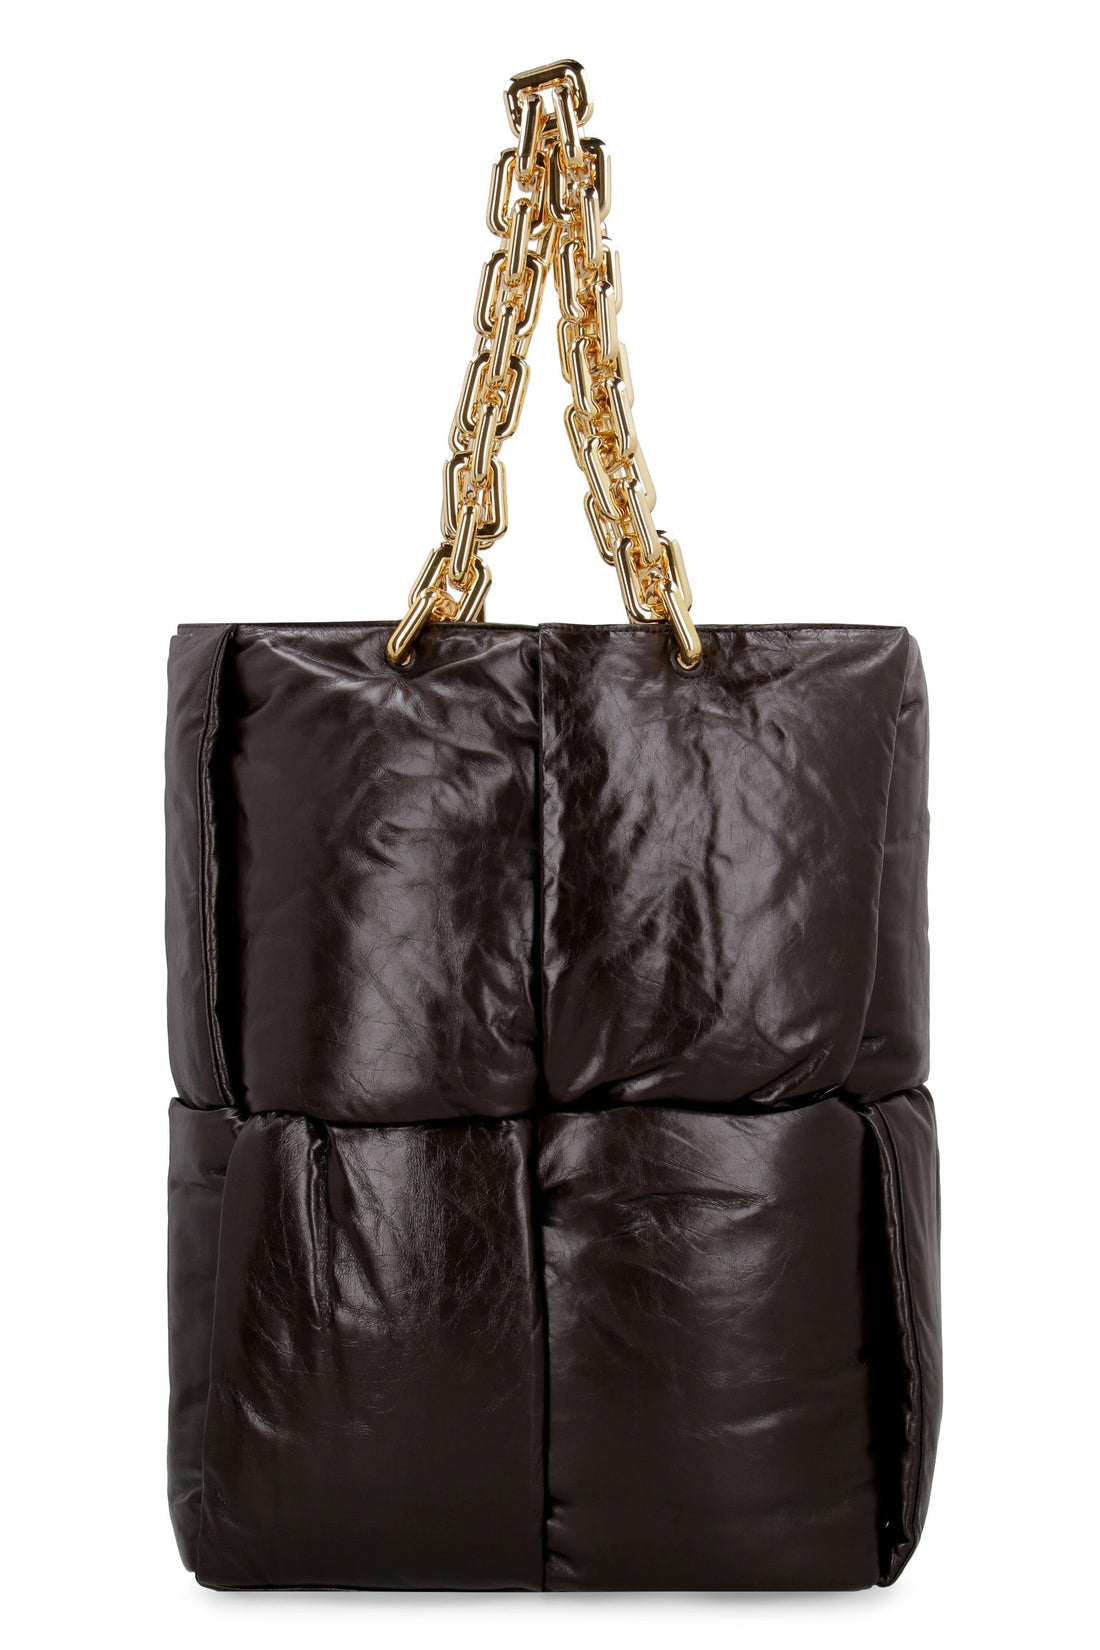 Bottega Veneta-OUTLET-SALE-The Chain Tote bag-ARCHIVIST